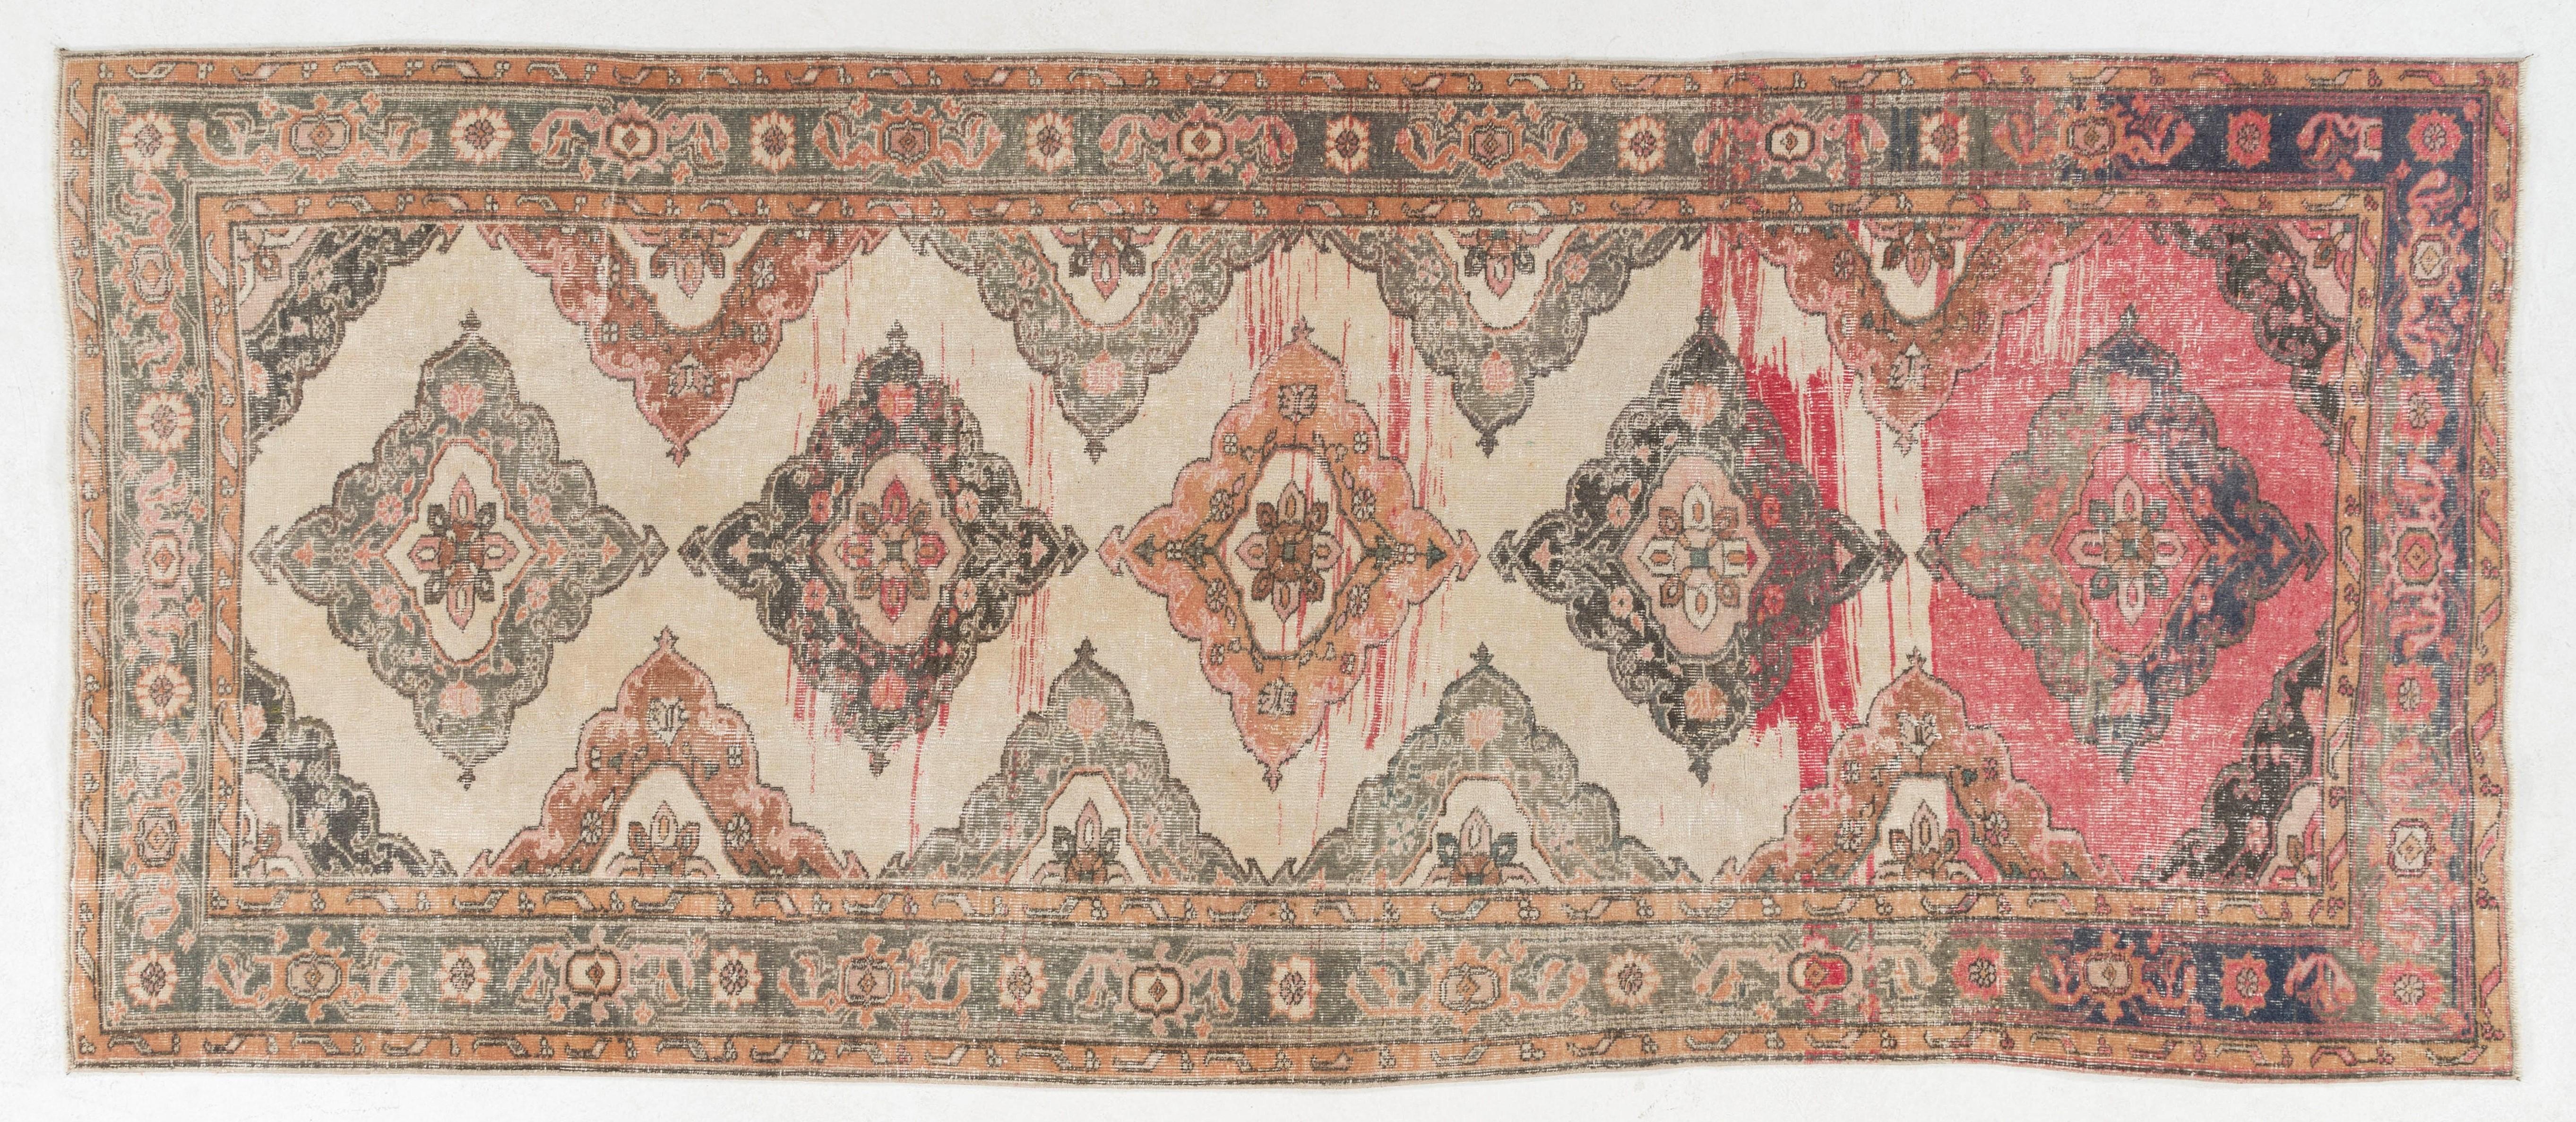 20th Century 4.8x11.6 Ft Vintage Anatolian Oushak Wool Runner Rug, Handmade Corridor Carpet For Sale